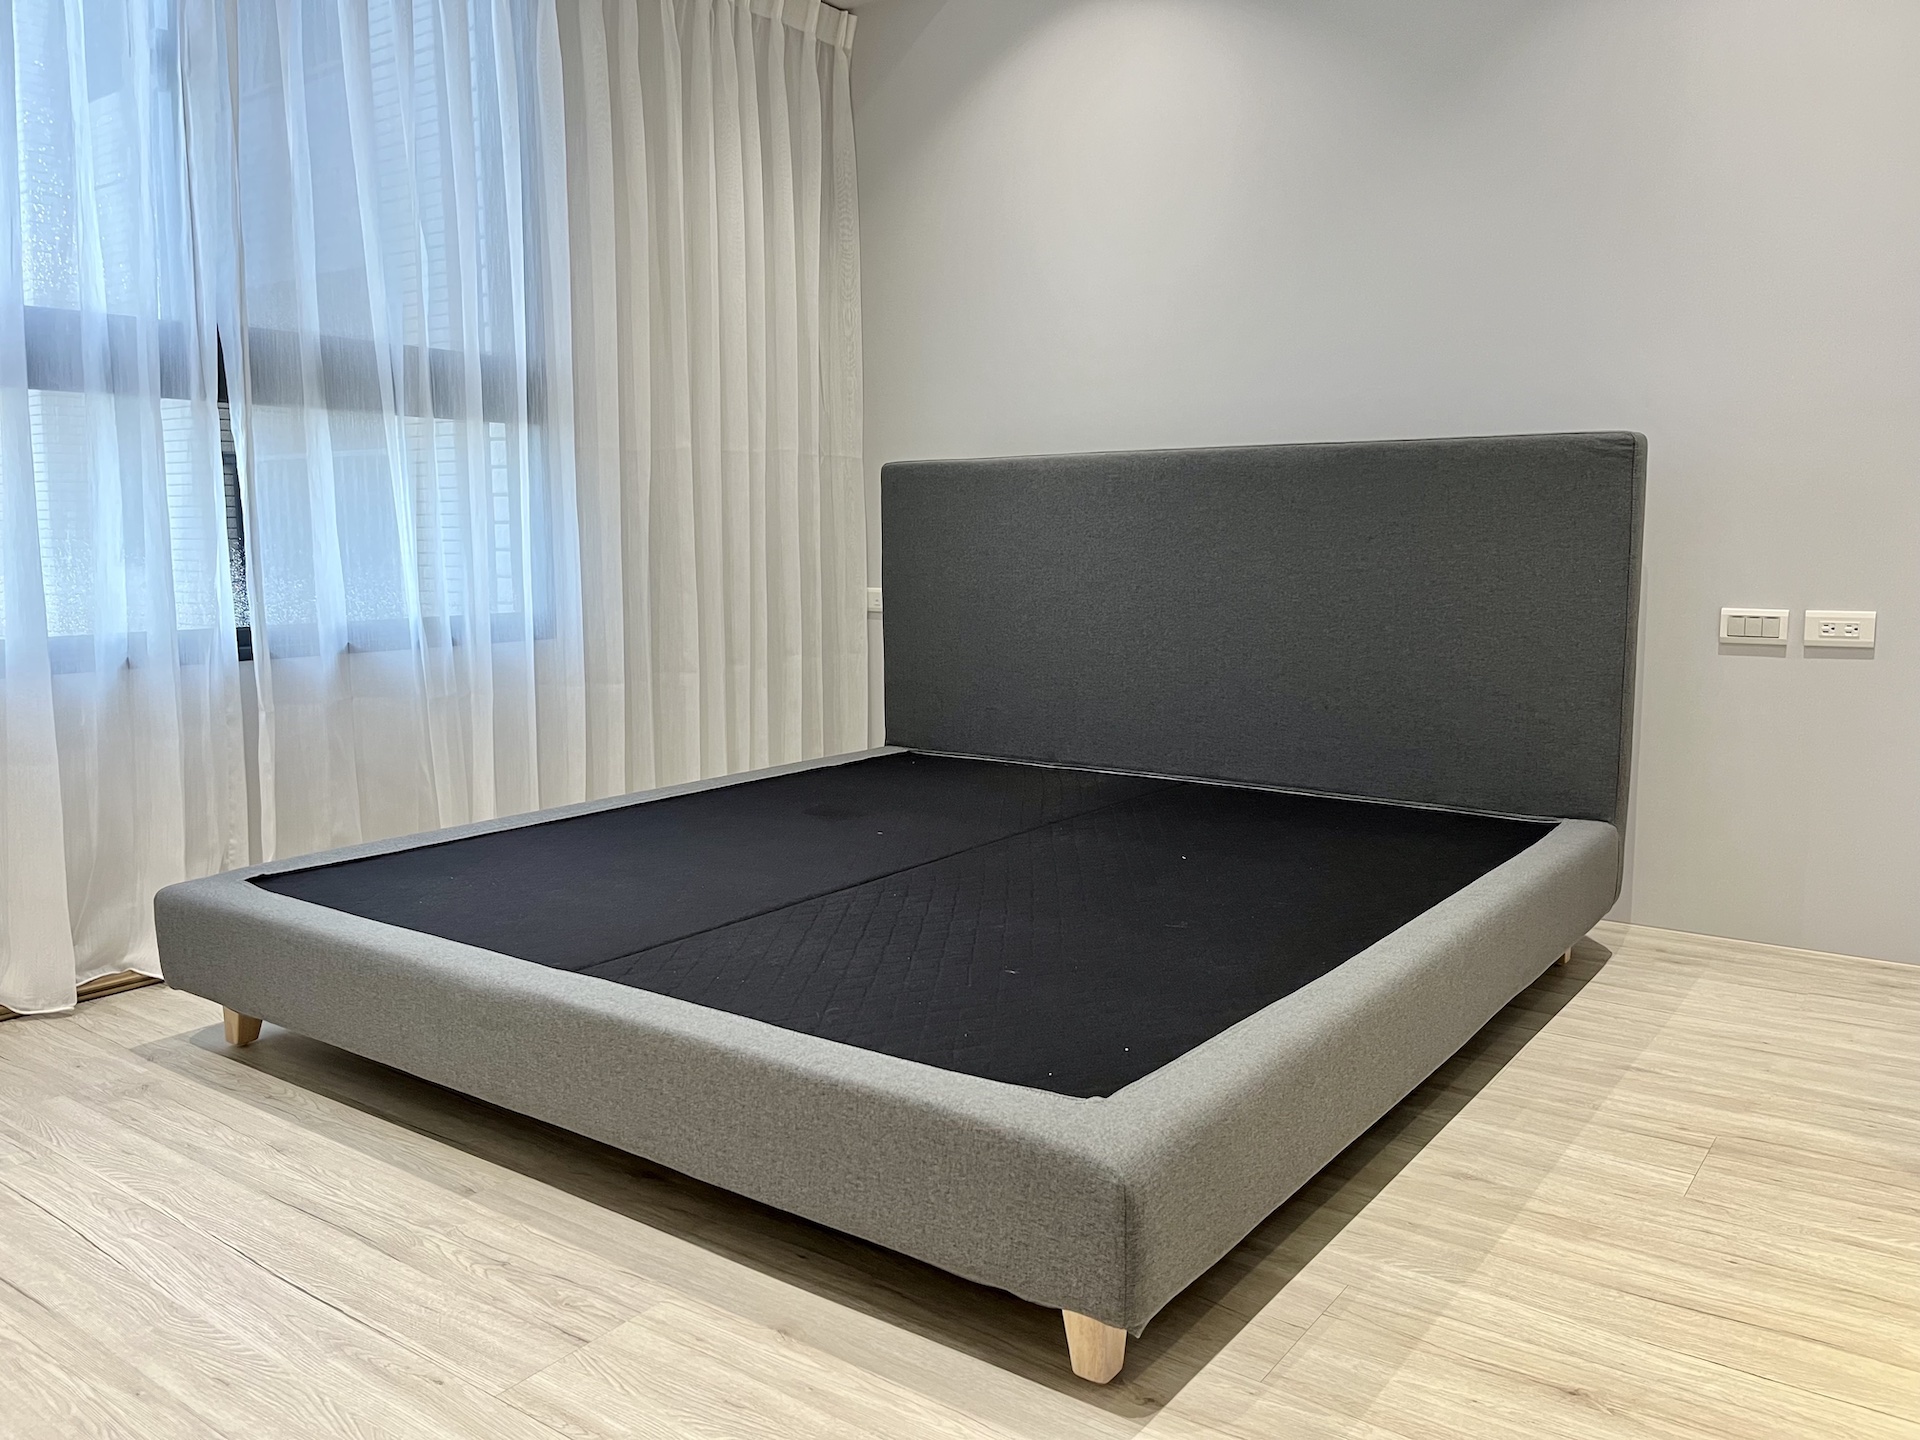 【客戶案例分享】台中東區雙人加大床組訂製